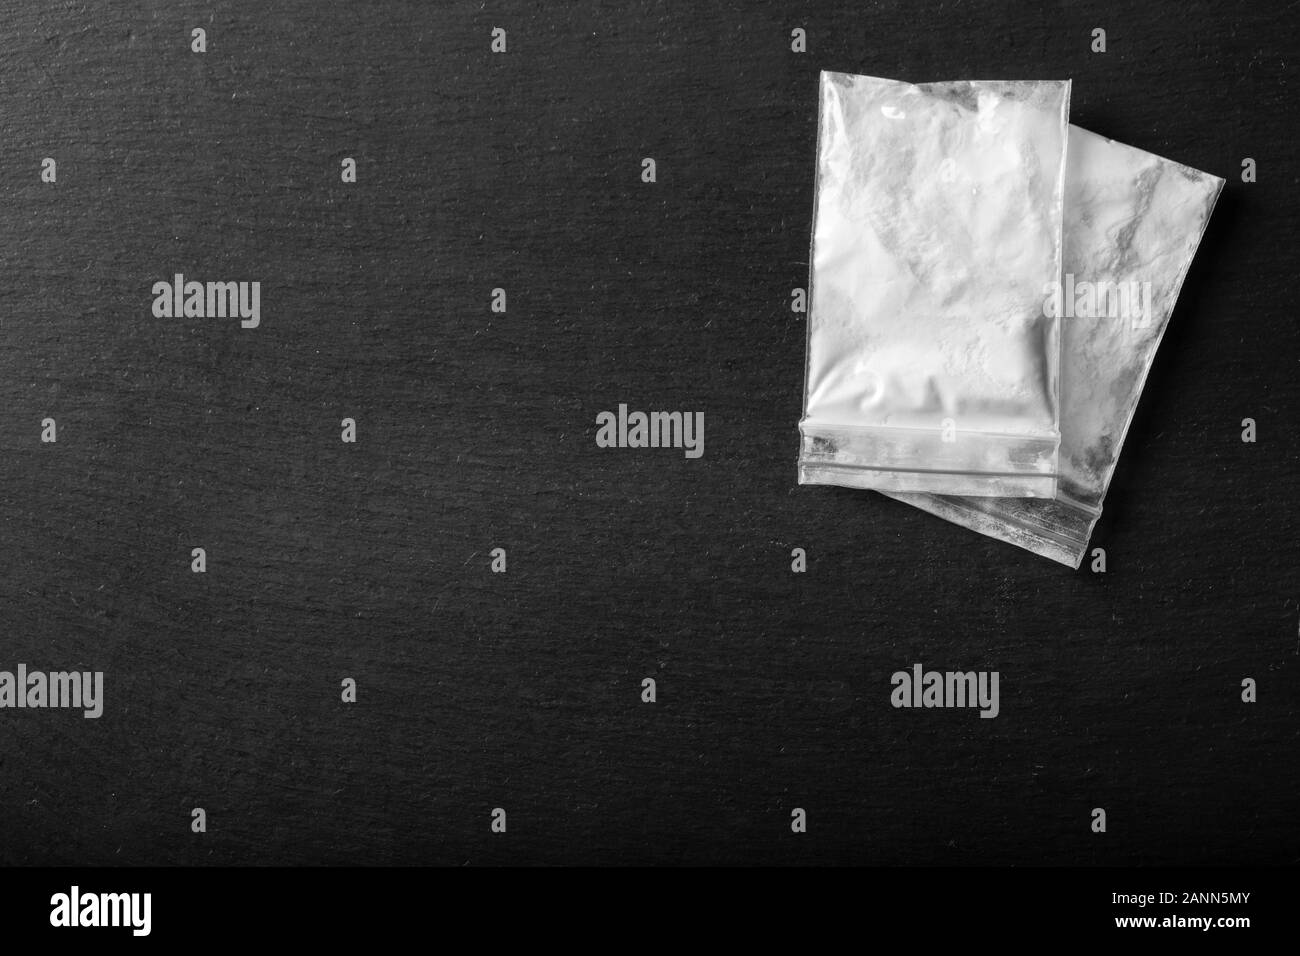 La poudre dans un sac en plastique sur un fond noir. Le trafic illégal des drogues. place pour le texte Banque D'Images